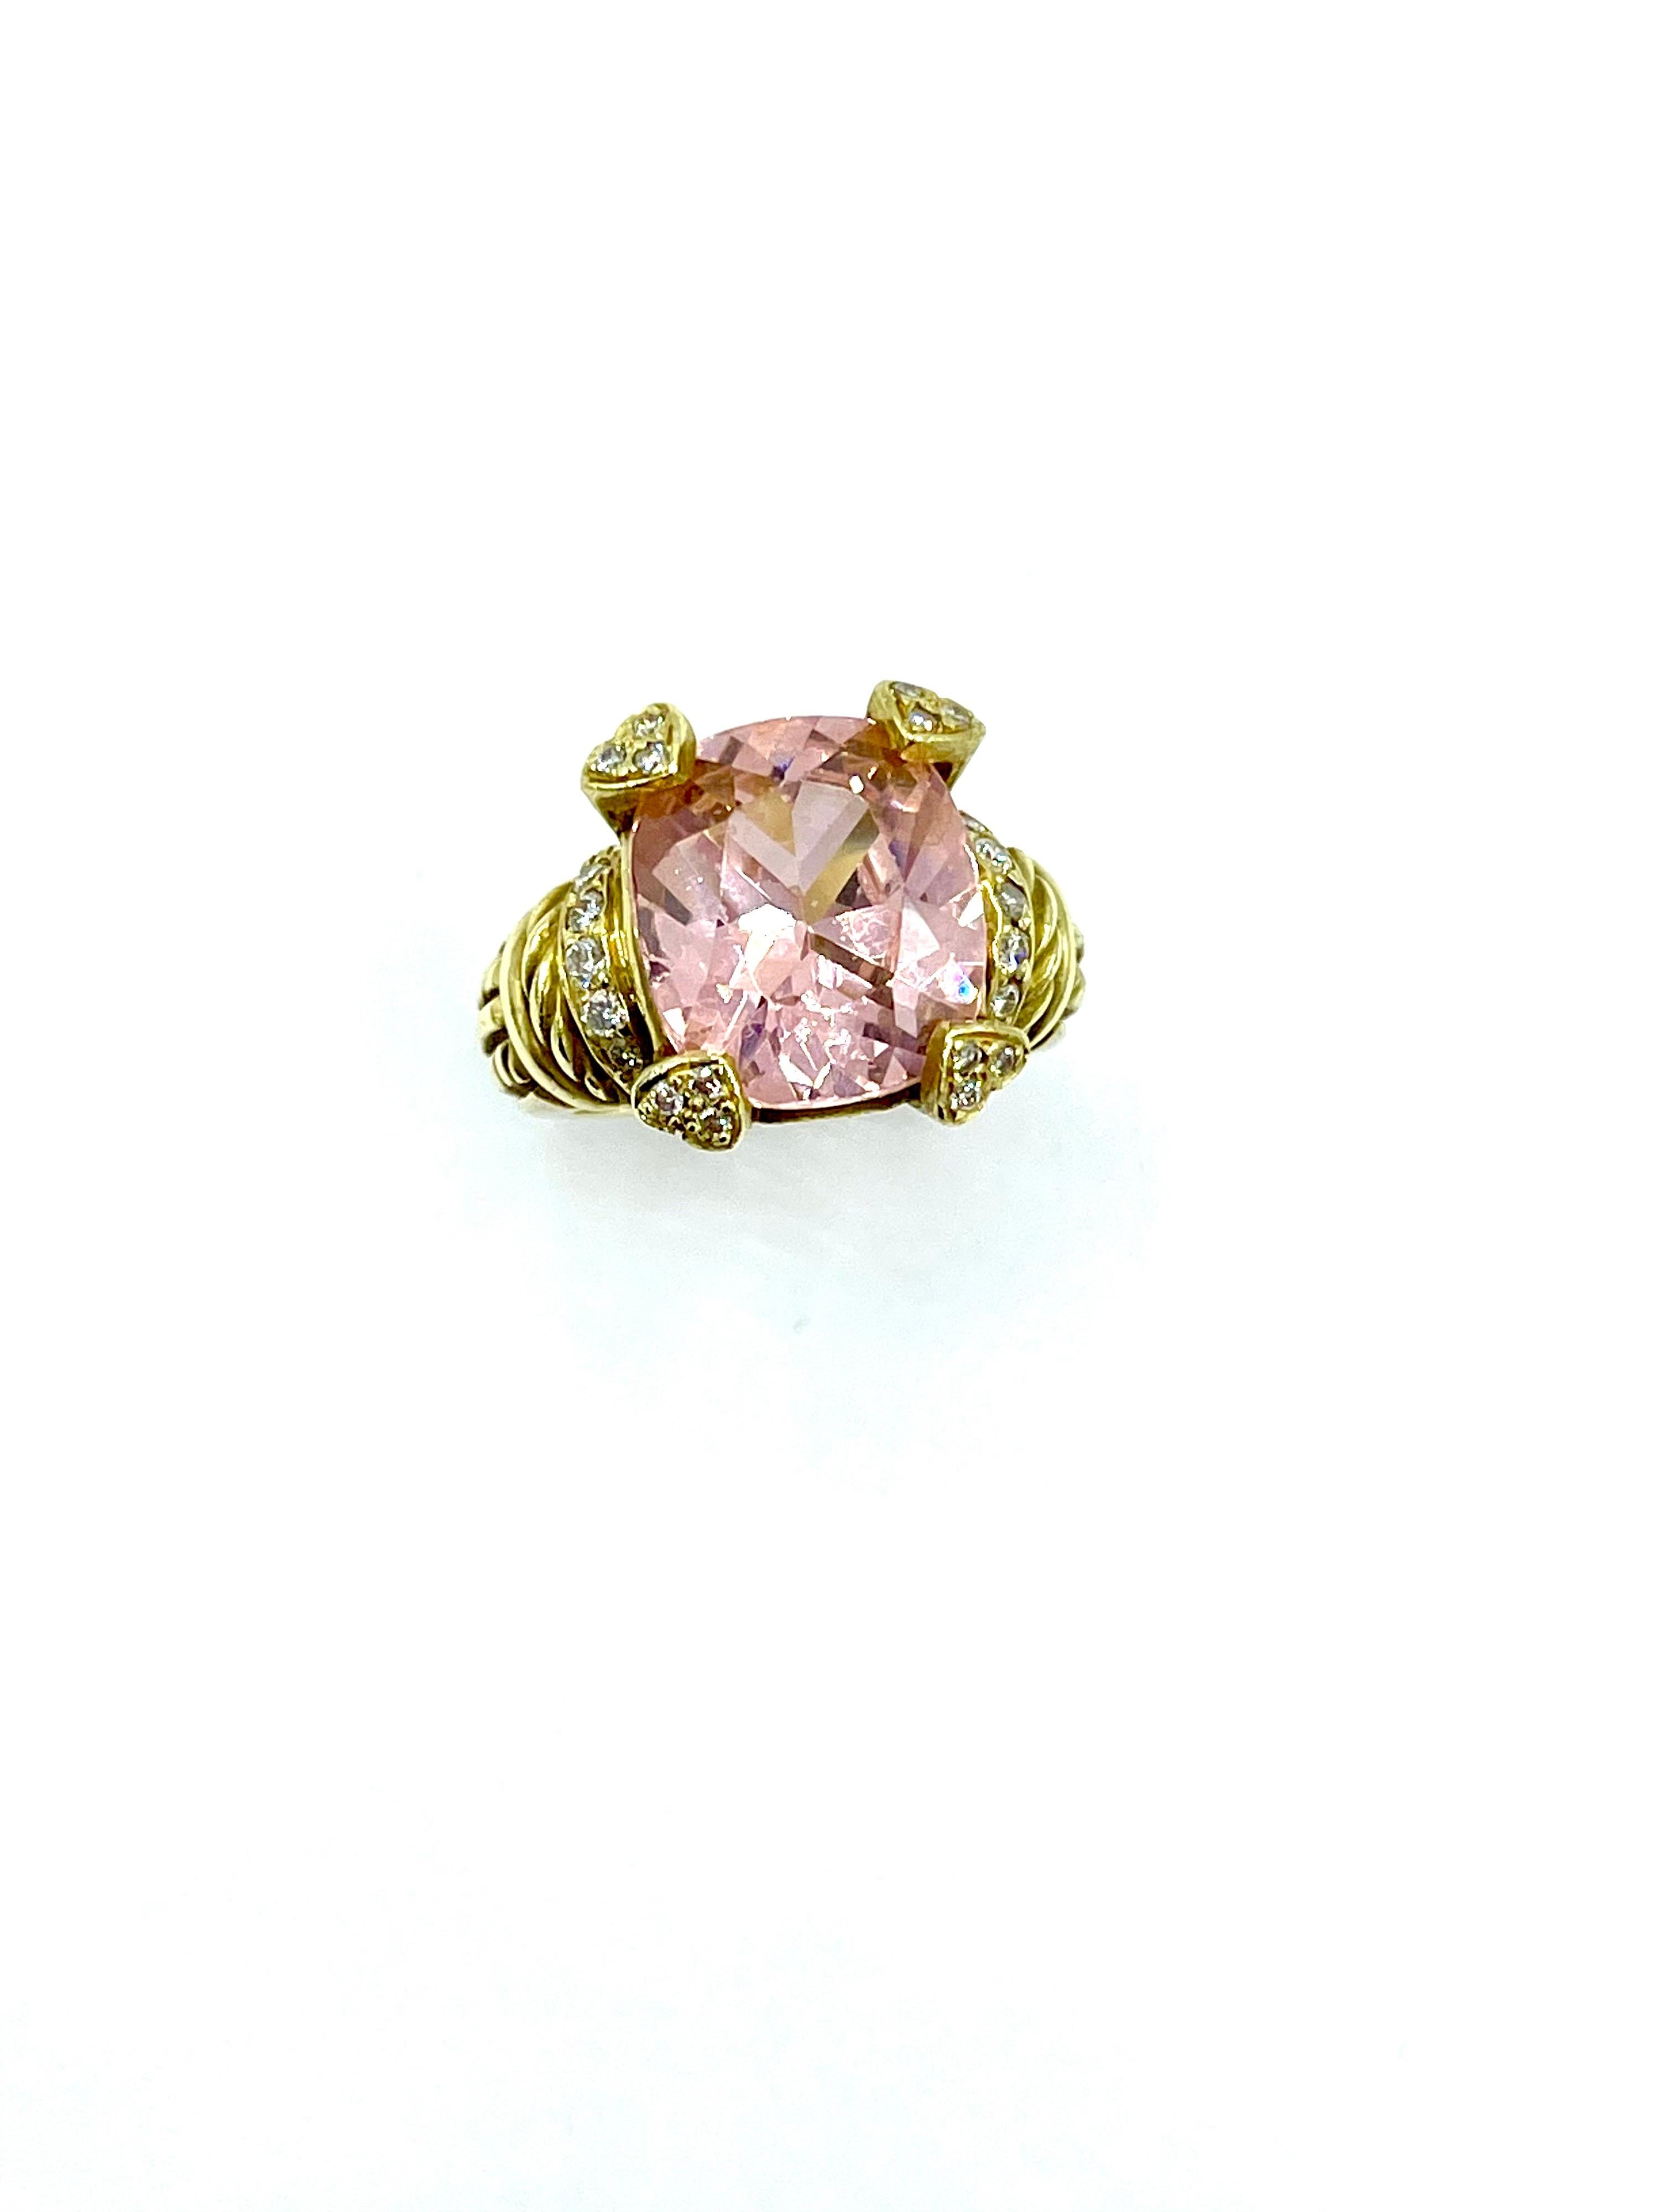 Magnifique bague cocktail en quartz rose coussin de 6,89 carats et diamants, créée par Judith Ripka.  Le quartz est serti de quatre diamants à double griffe, avec une seule rangée de diamants ronds brillants de chaque côté.  Il y a un total de 0,27